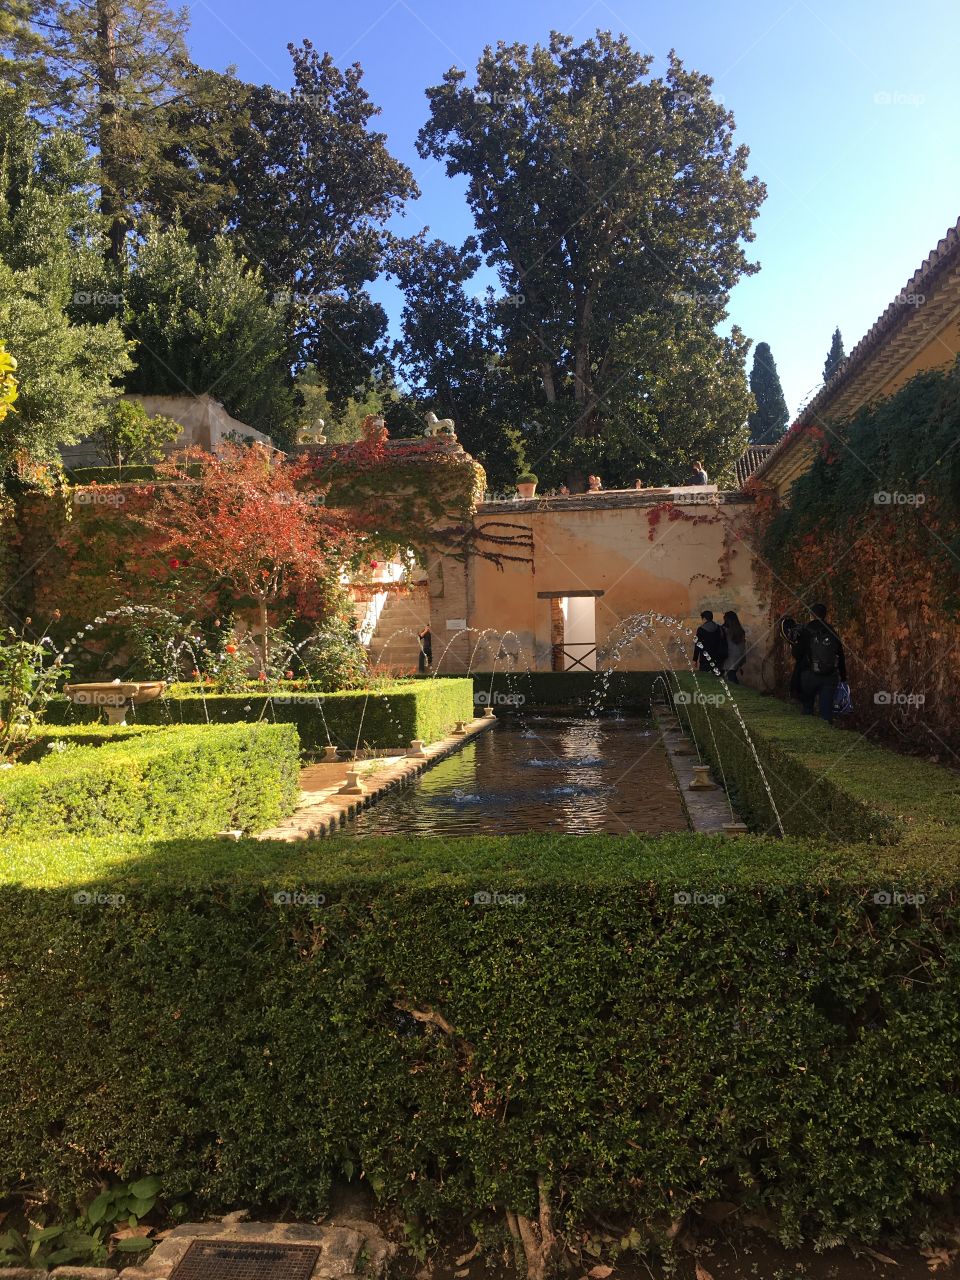 The Spanish garden in November 